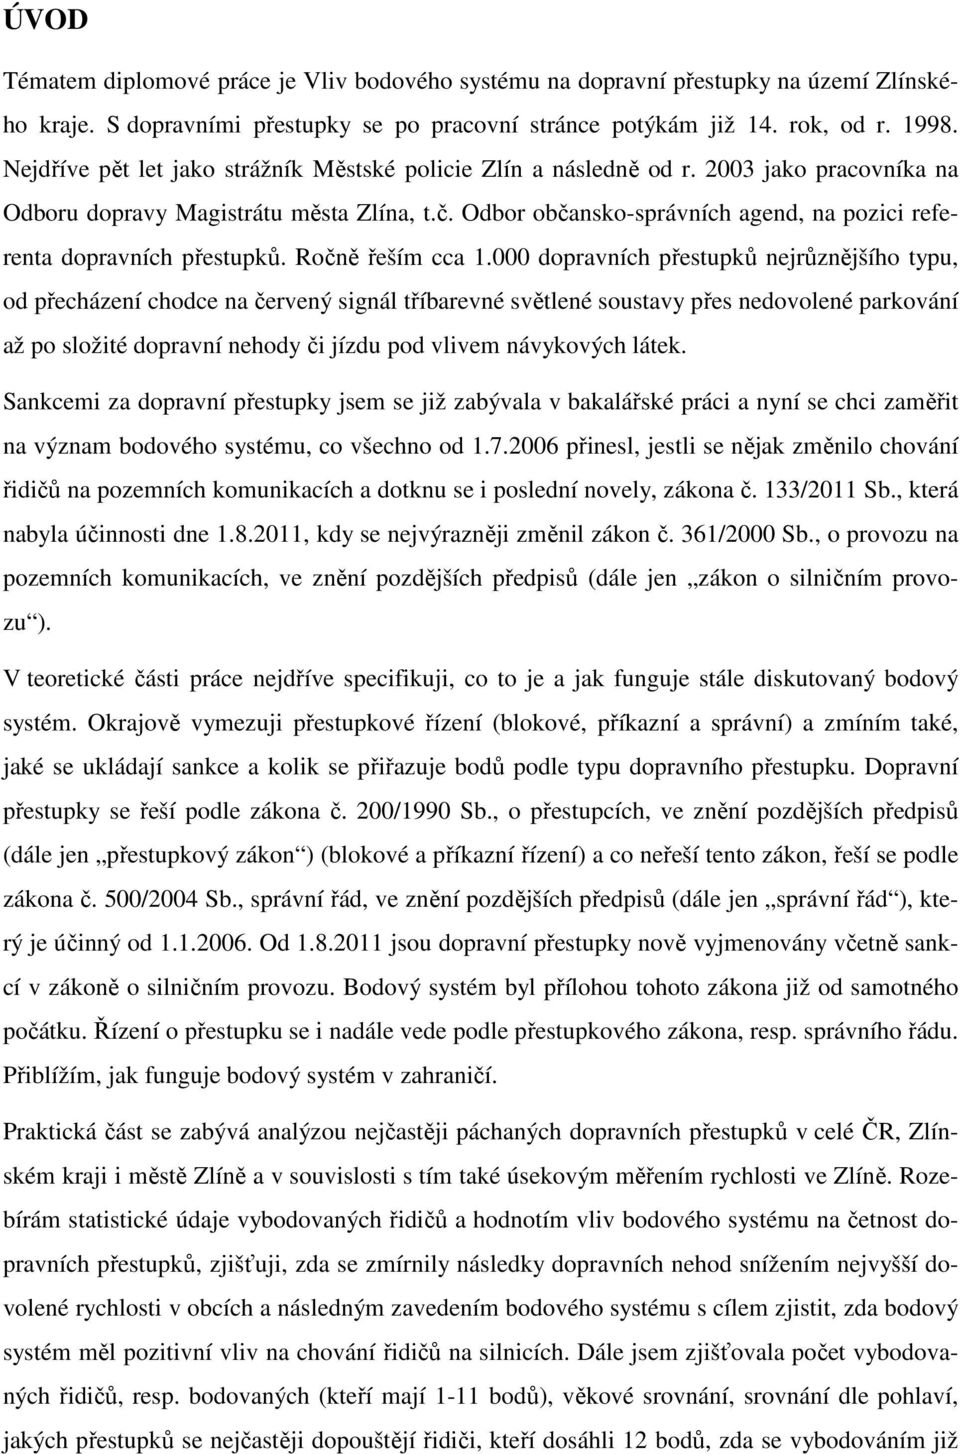 Vliv bodového systému na dopravní přestupky na území Zlínského kraje. Bc.  Bohumila Šudřichová - PDF Stažení zdarma